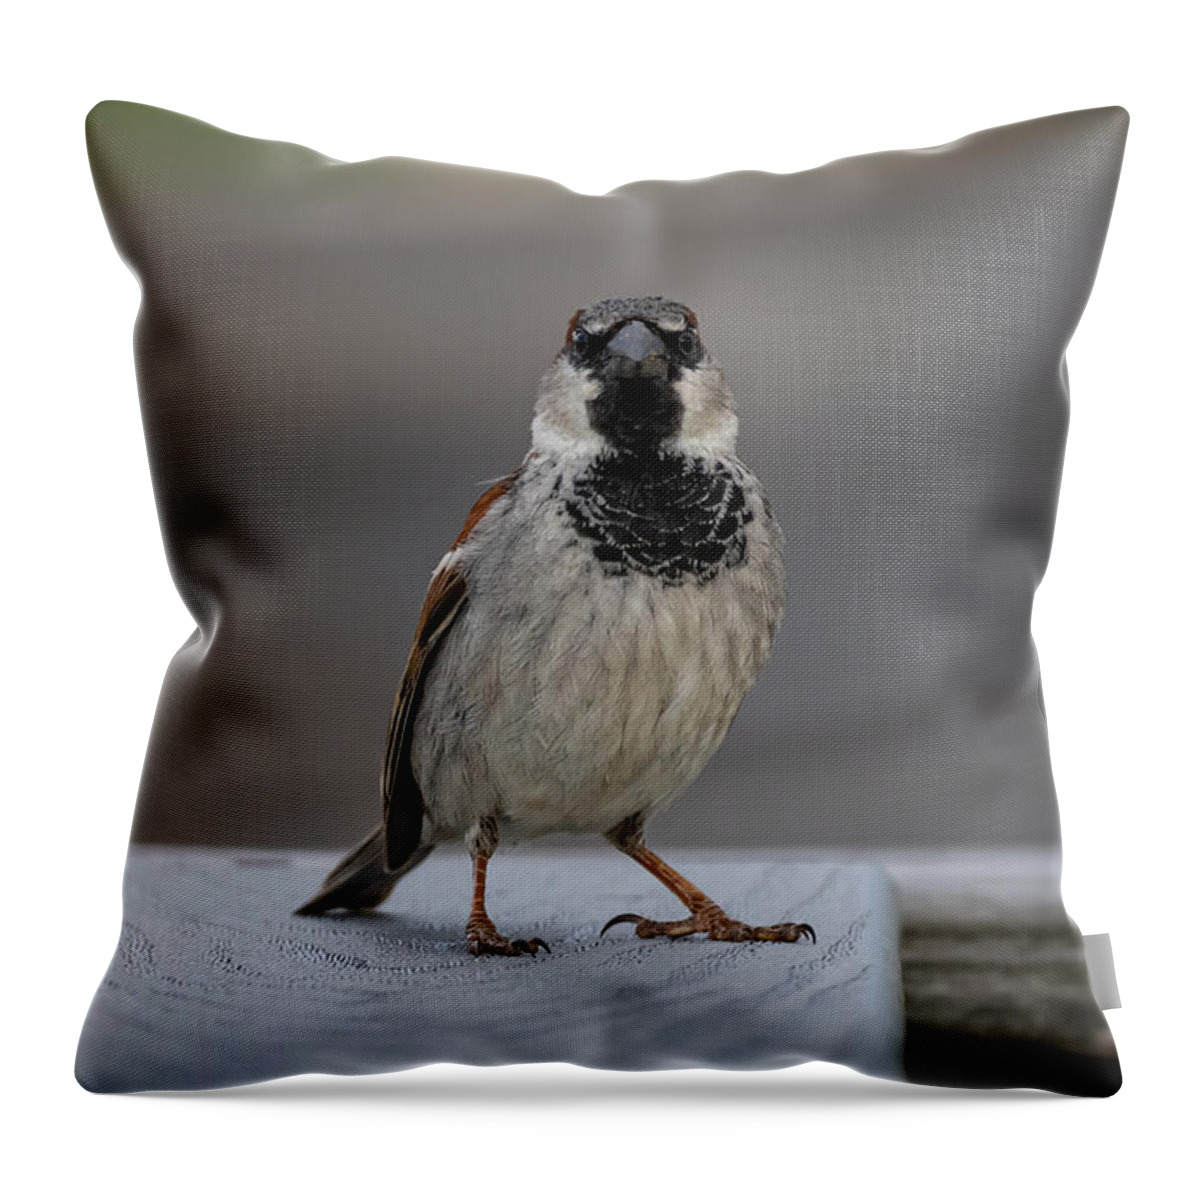 Bird Throw Pillow featuring the photograph Sparrow Attitude by Linda Bonaccorsi